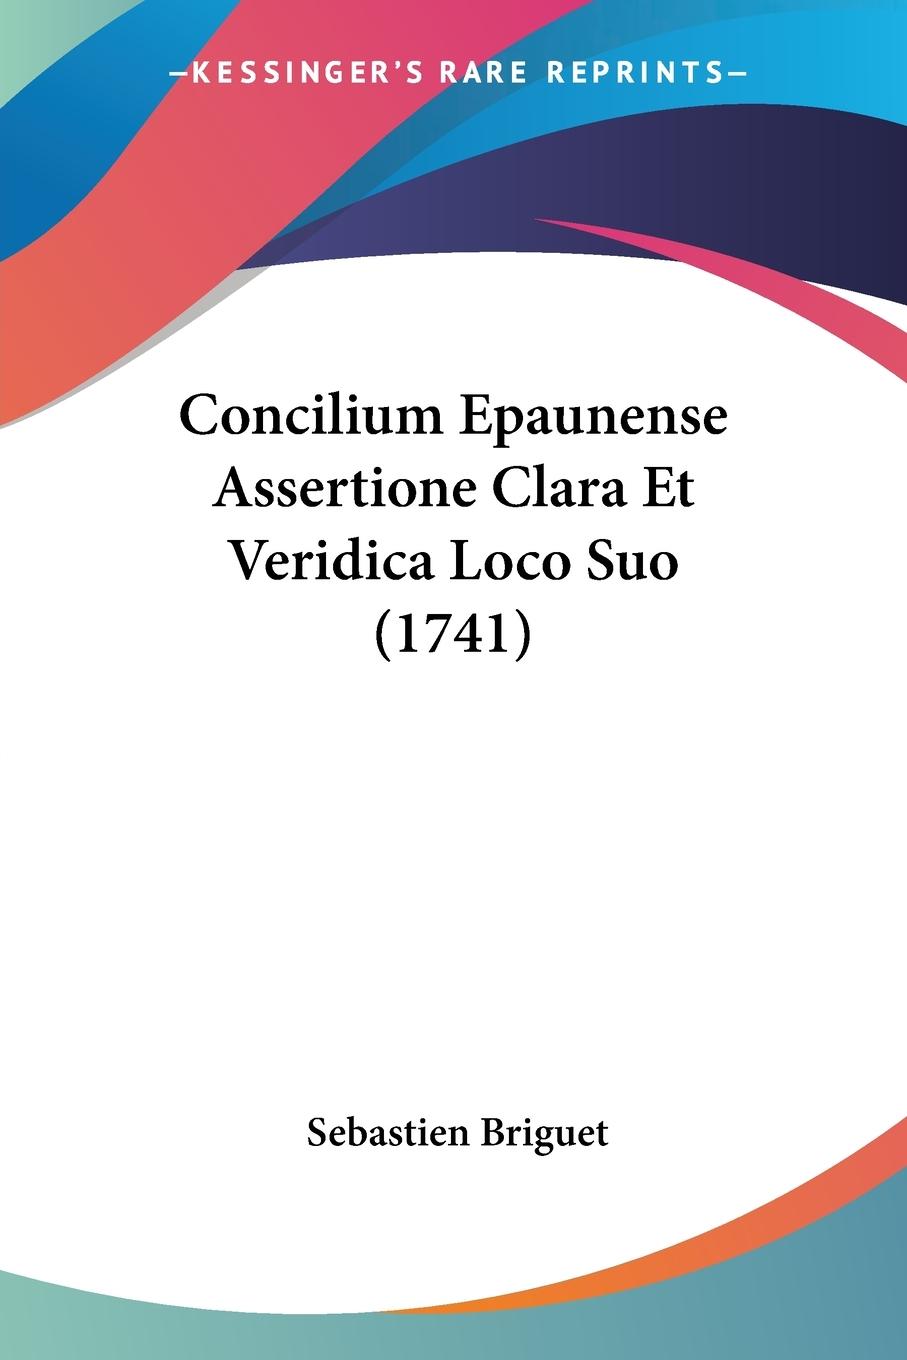 Concilium Epaunense Assertione Clara Et Veridica Loco Suo (1741) - Briguet, Sebastien